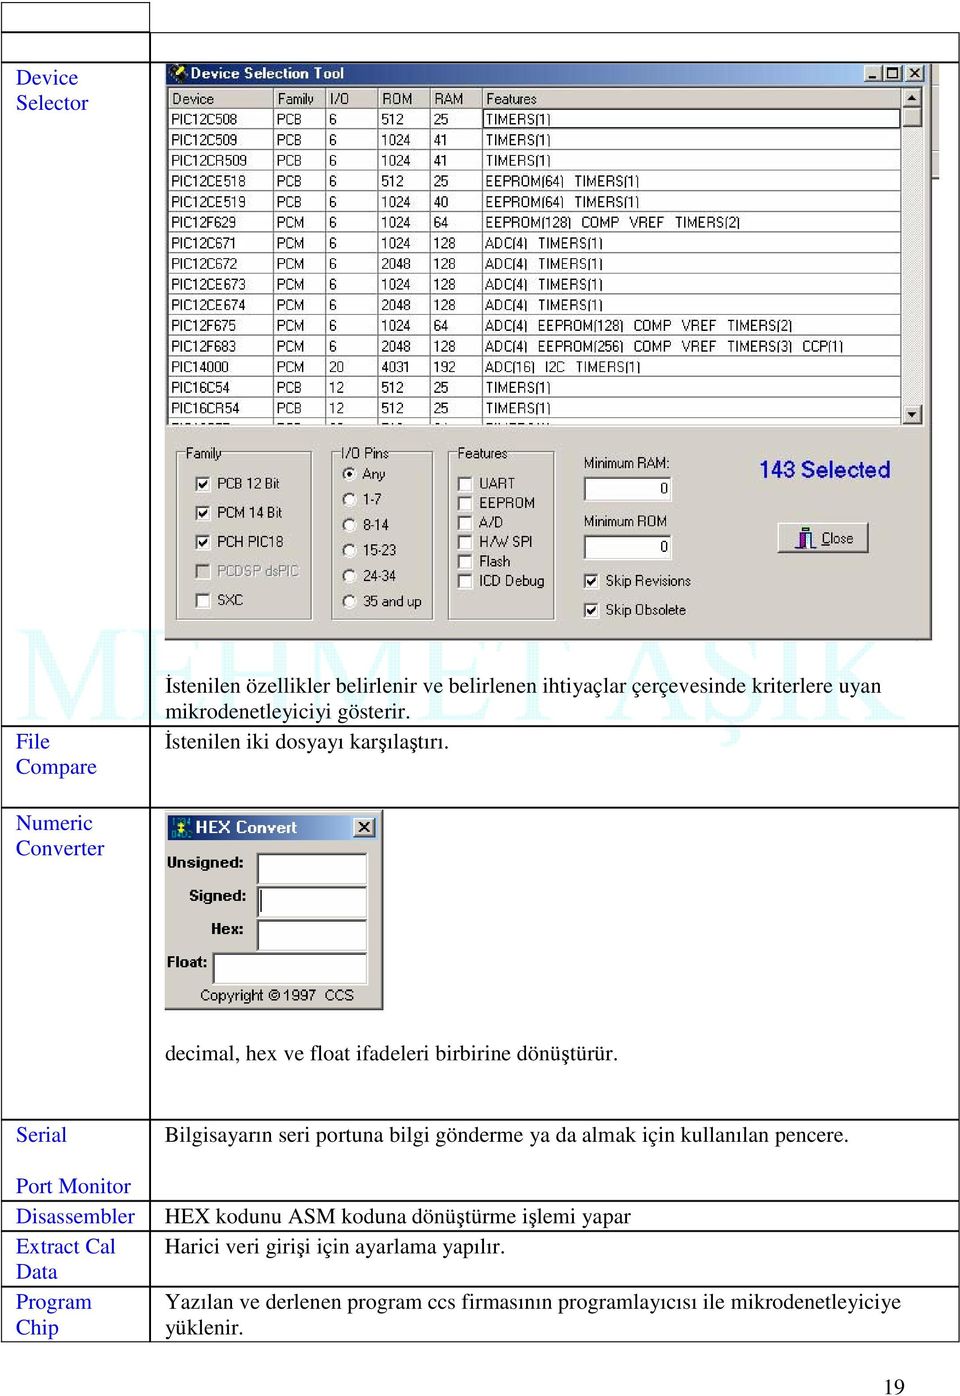 Serial Port Monitor Disassembler Extract Cal Data Program Chip Bilgisayarın seri portuna bilgi gönderme ya da almak için kullanılan pencere.